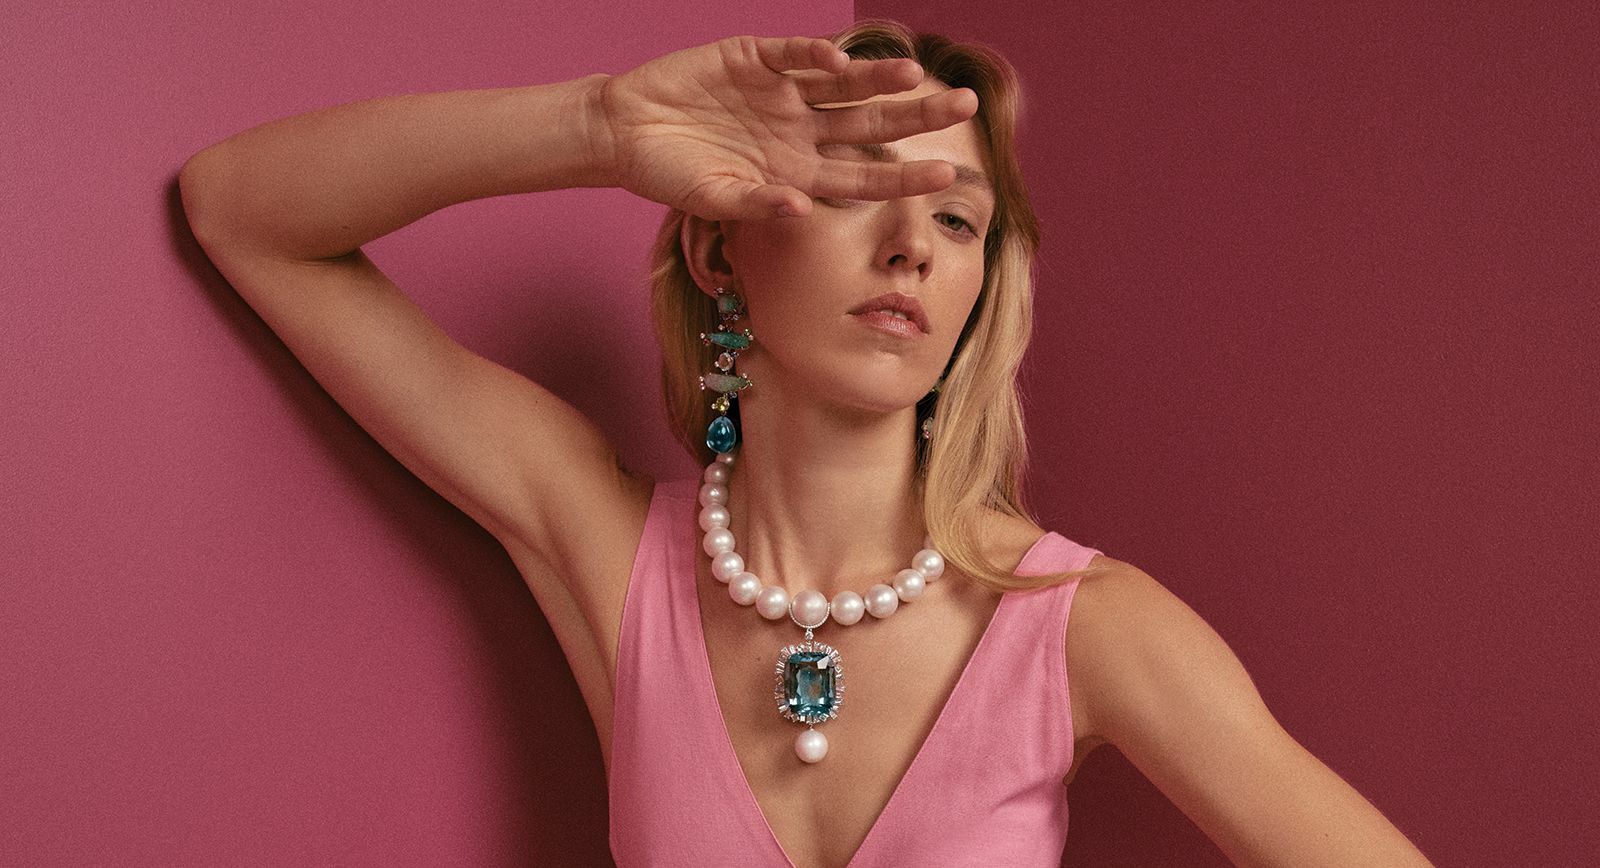 A model wears the Atlantic Queen pendant by Margot McKinney 